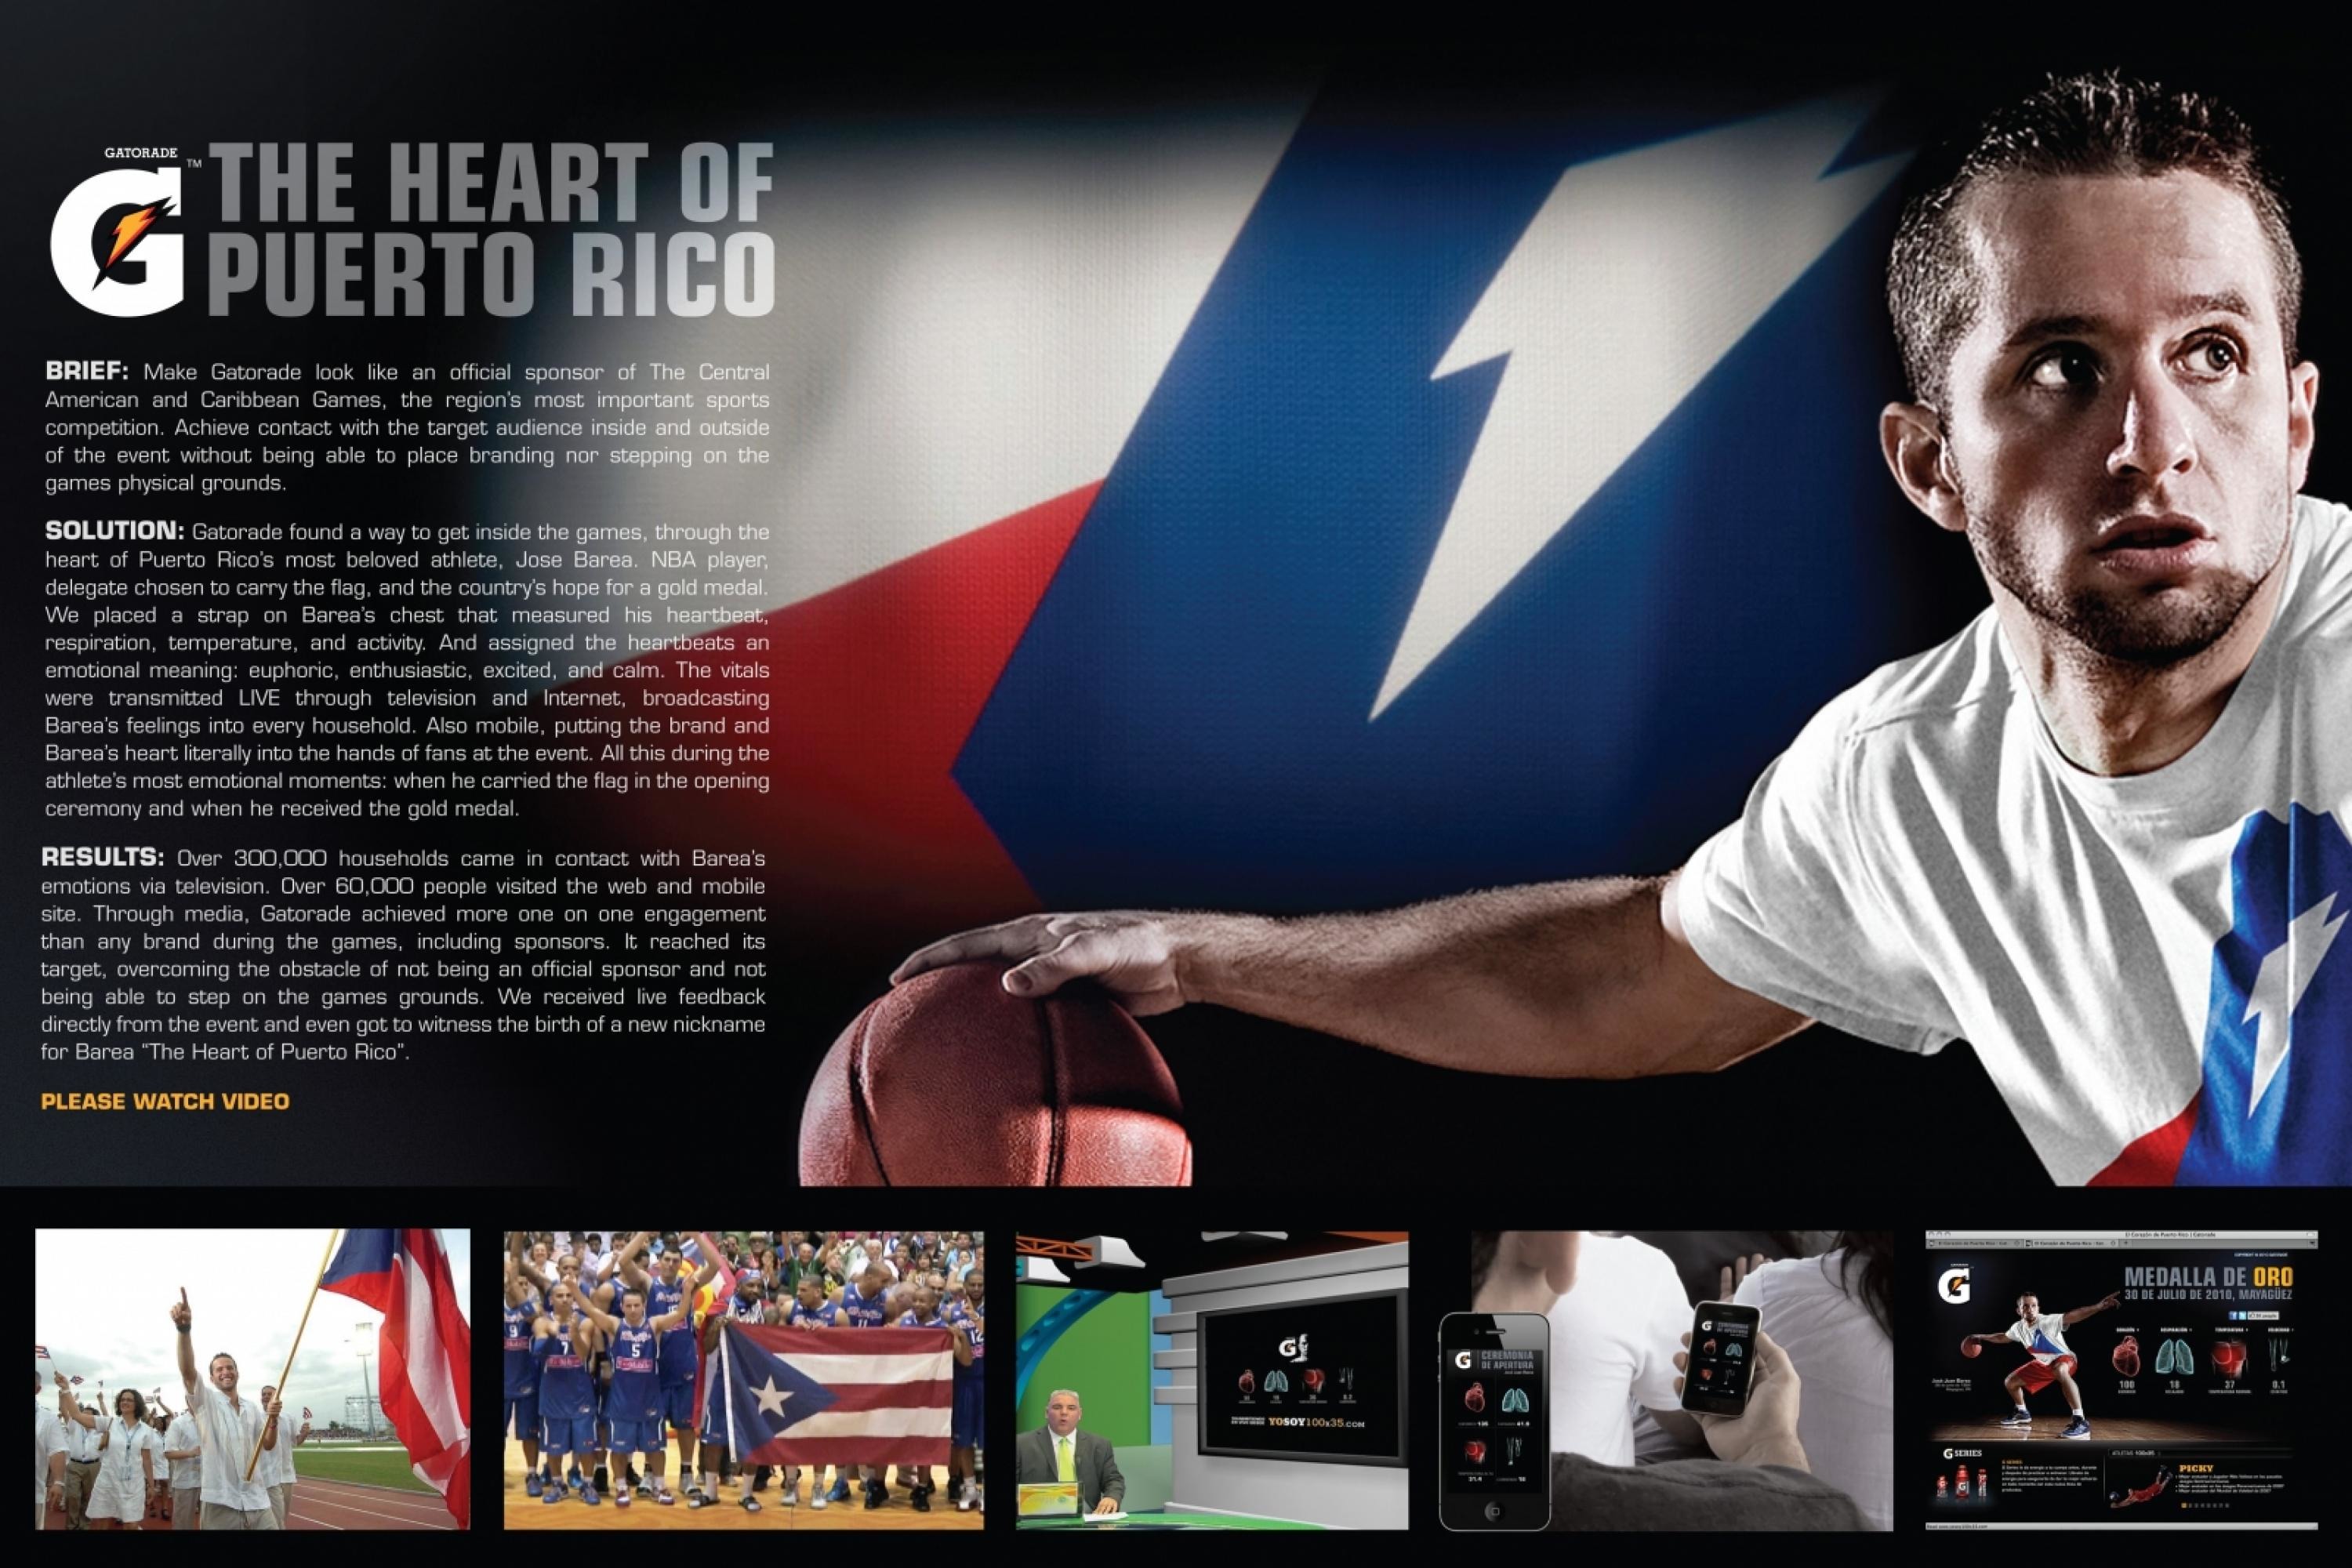 HEART OF PUERTO RICO